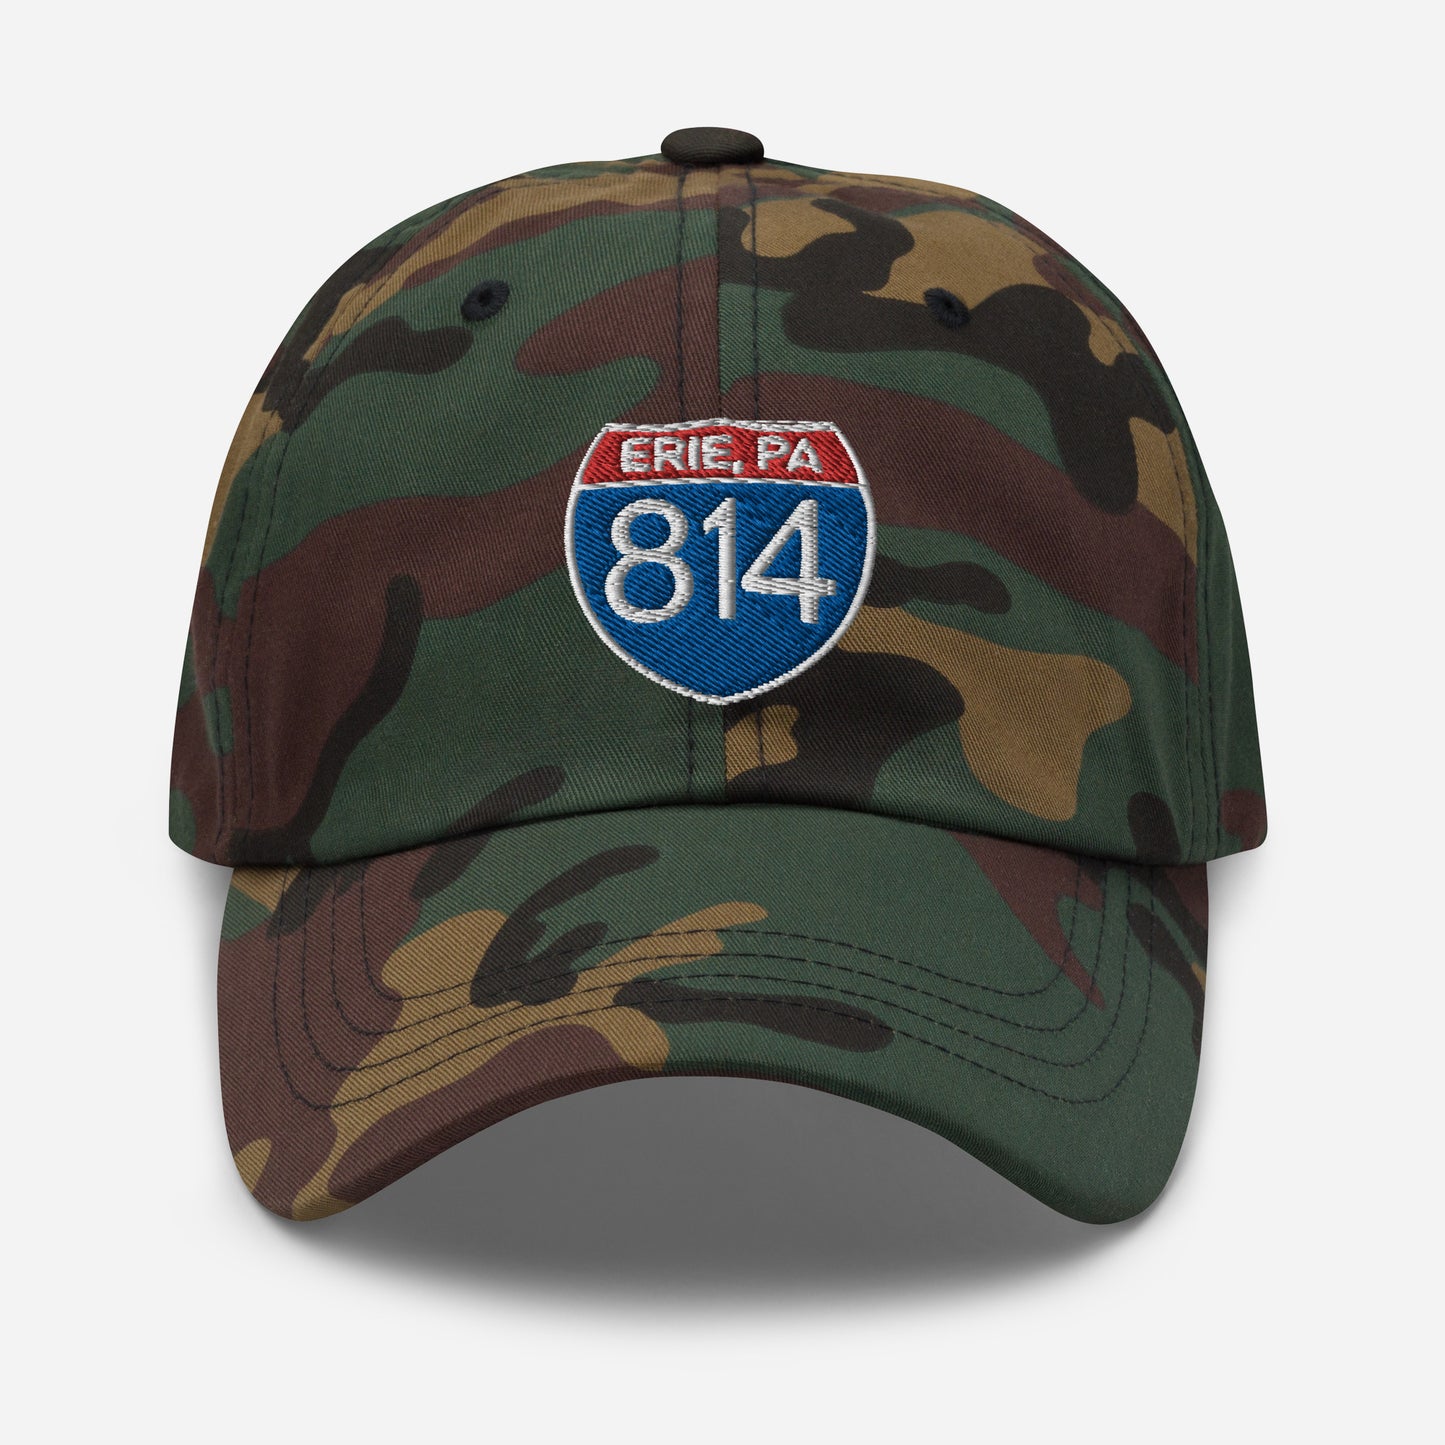 Interstate 814 Hat